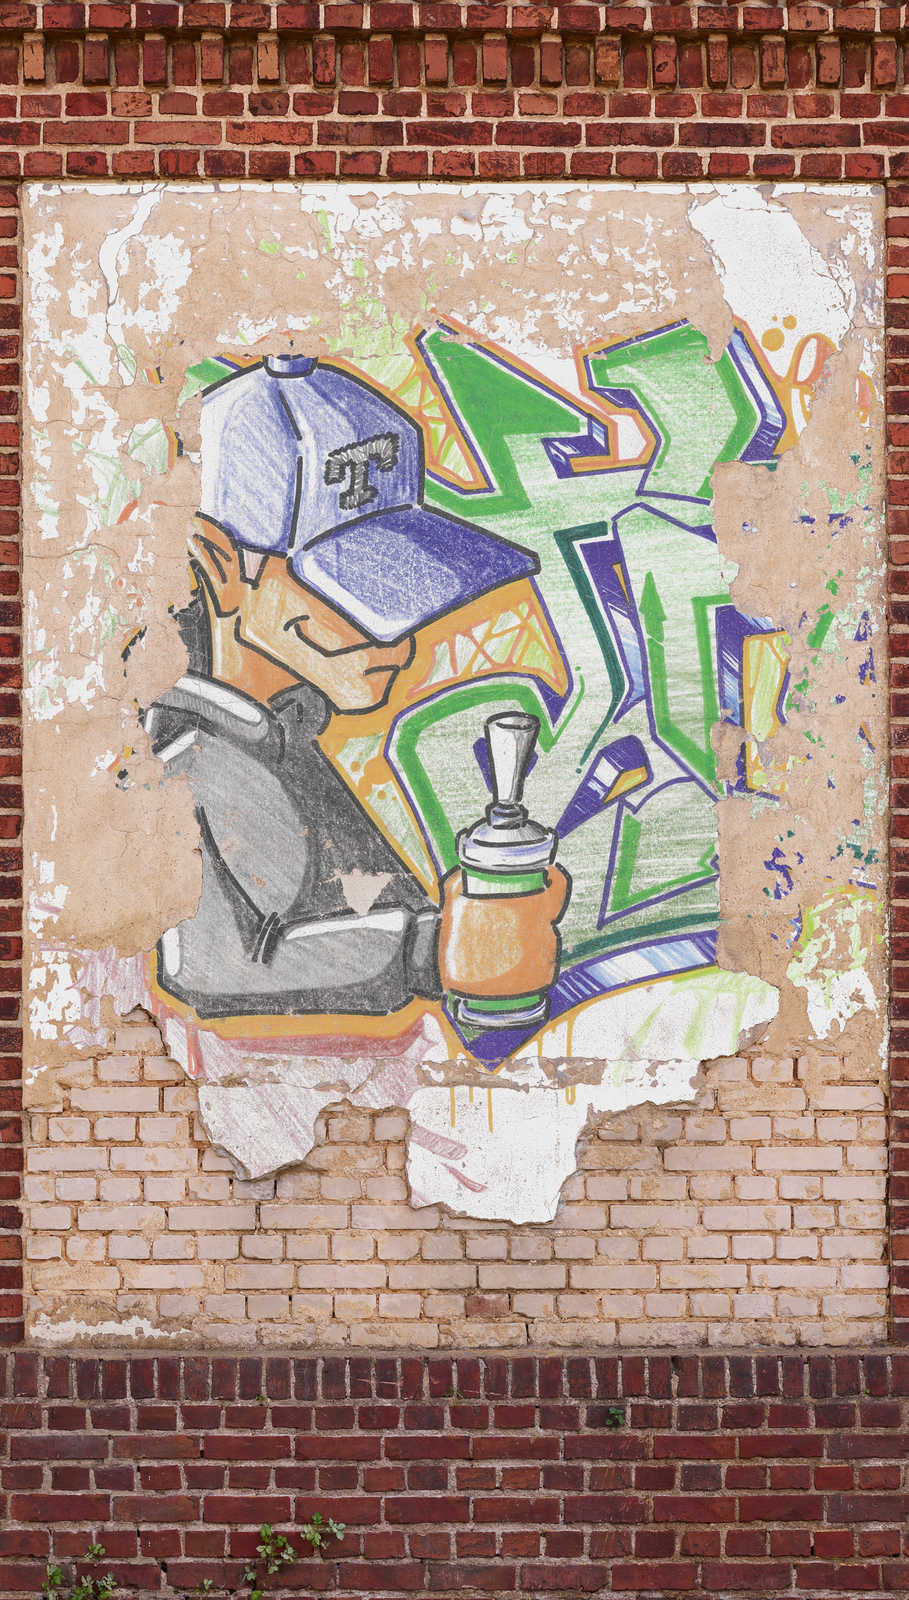 Brick & Colourful Graffiti